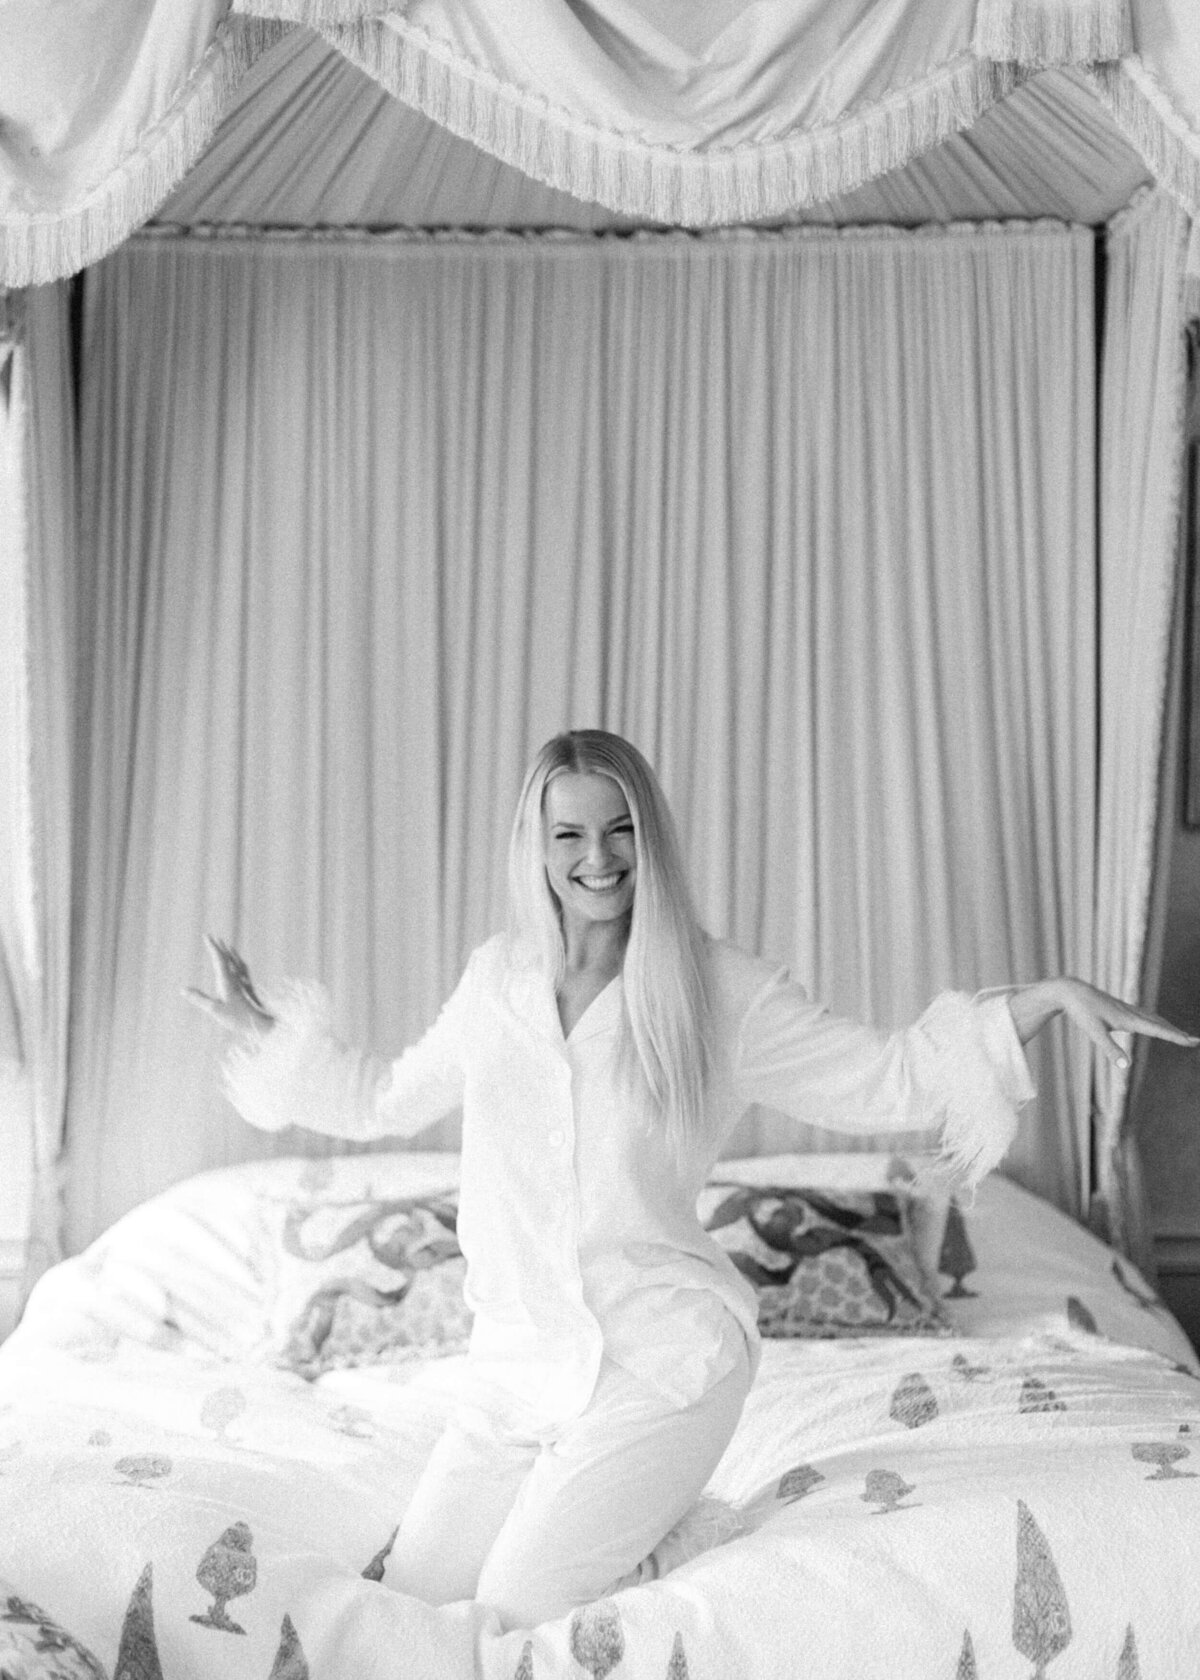 chloe-winstanley-weddings-cotswolds-cornwell-manor-bedroom-daily-sleeper-pj-black-white